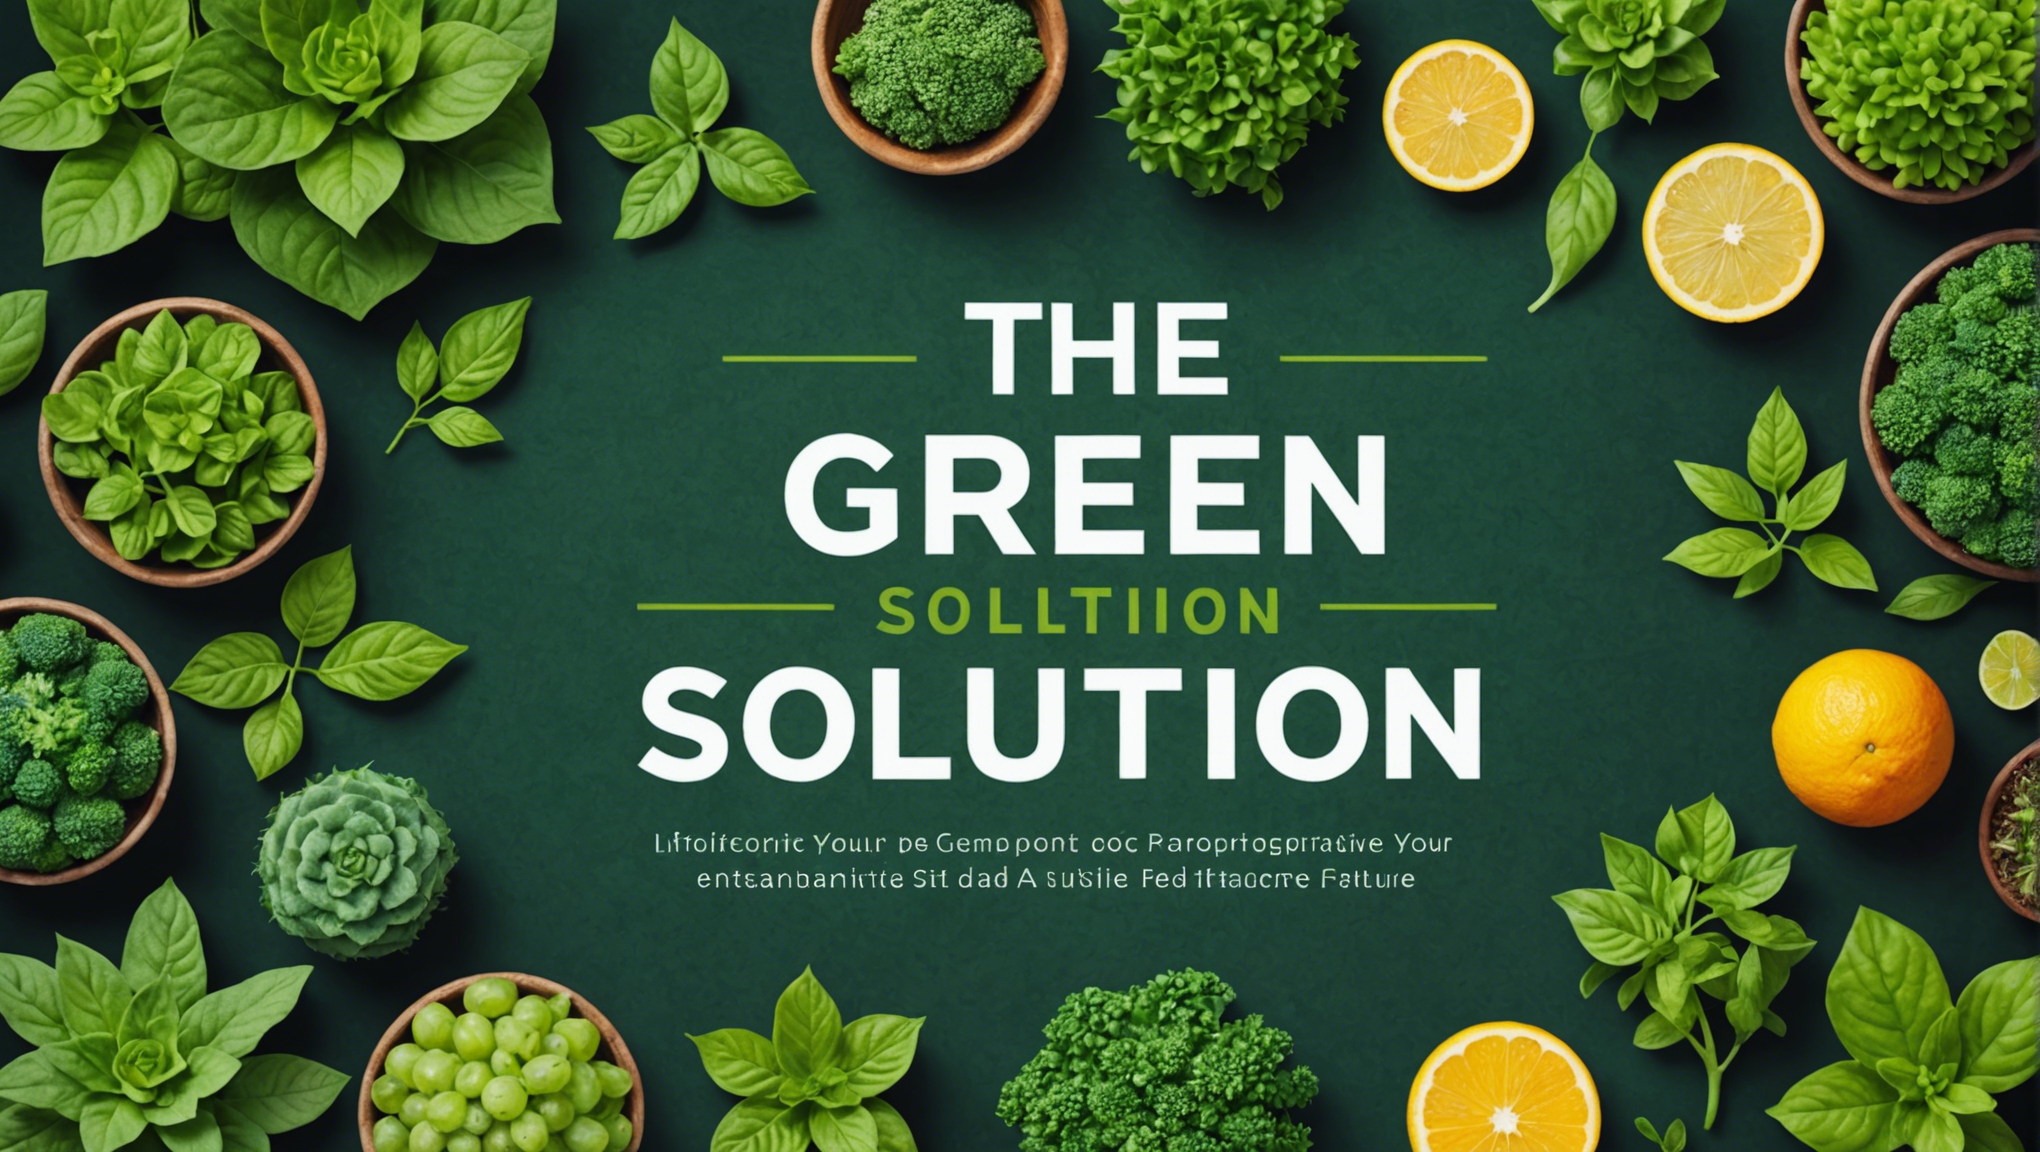 découvrez comment révolutionner votre mode de vie pour un avenir durable avec la solution verte.